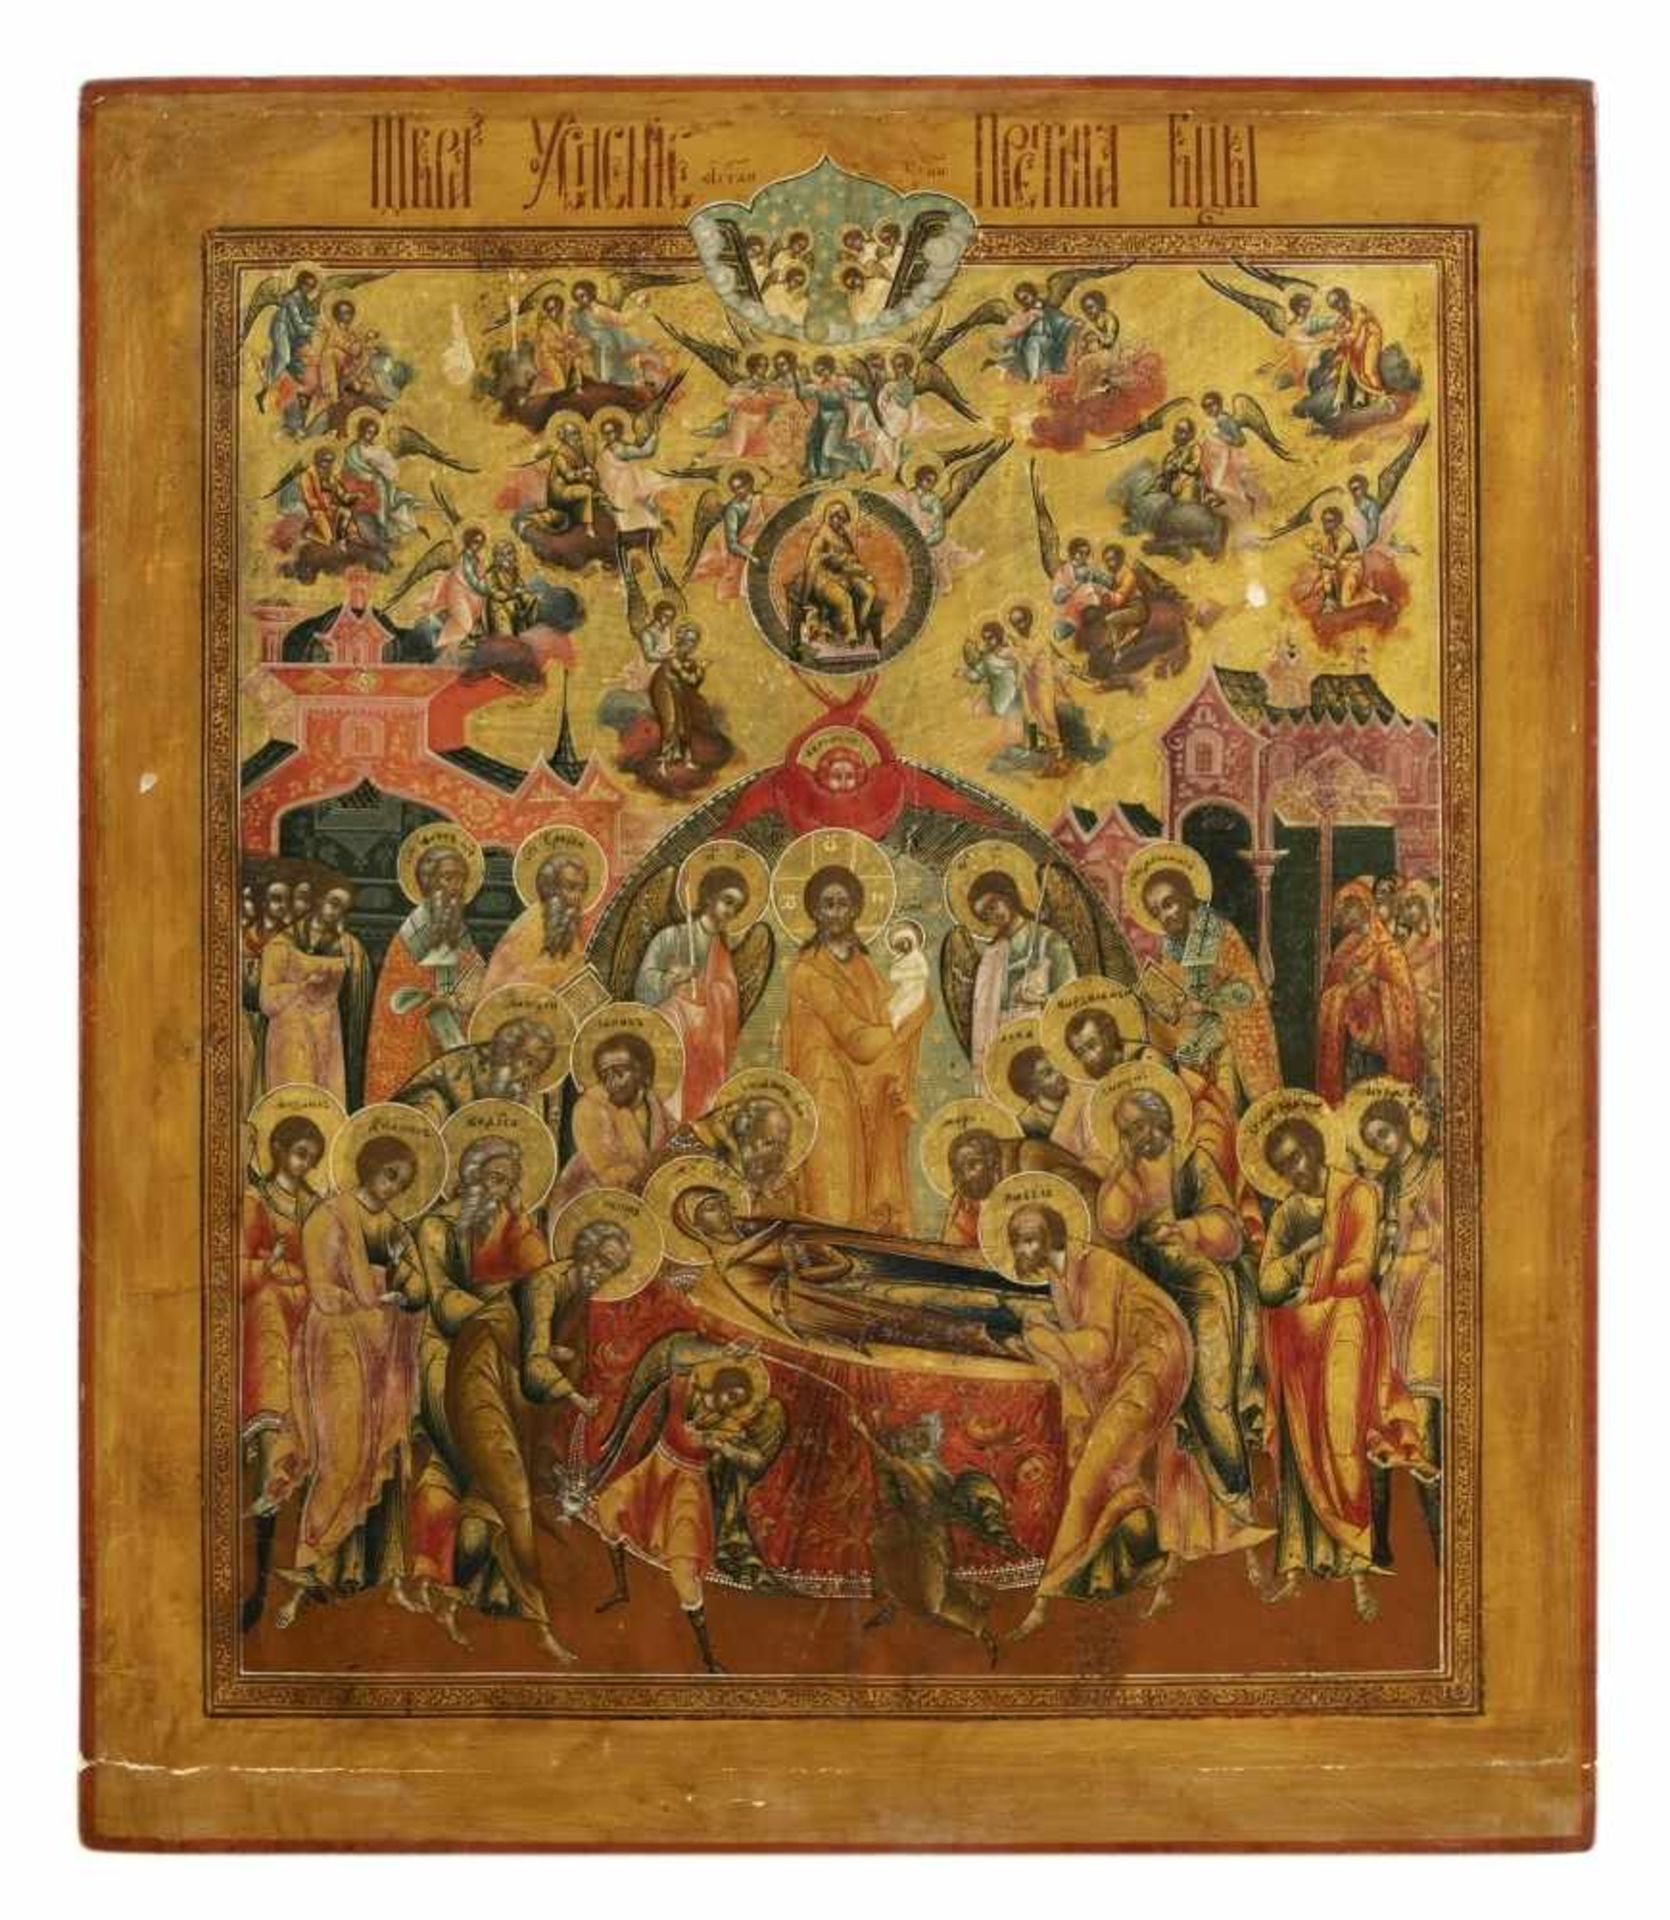 Entschlafung der GottesmutterRussische Ikone (Palech), Tempera / Holz, um 180040,2 x 34,4 cmAuf